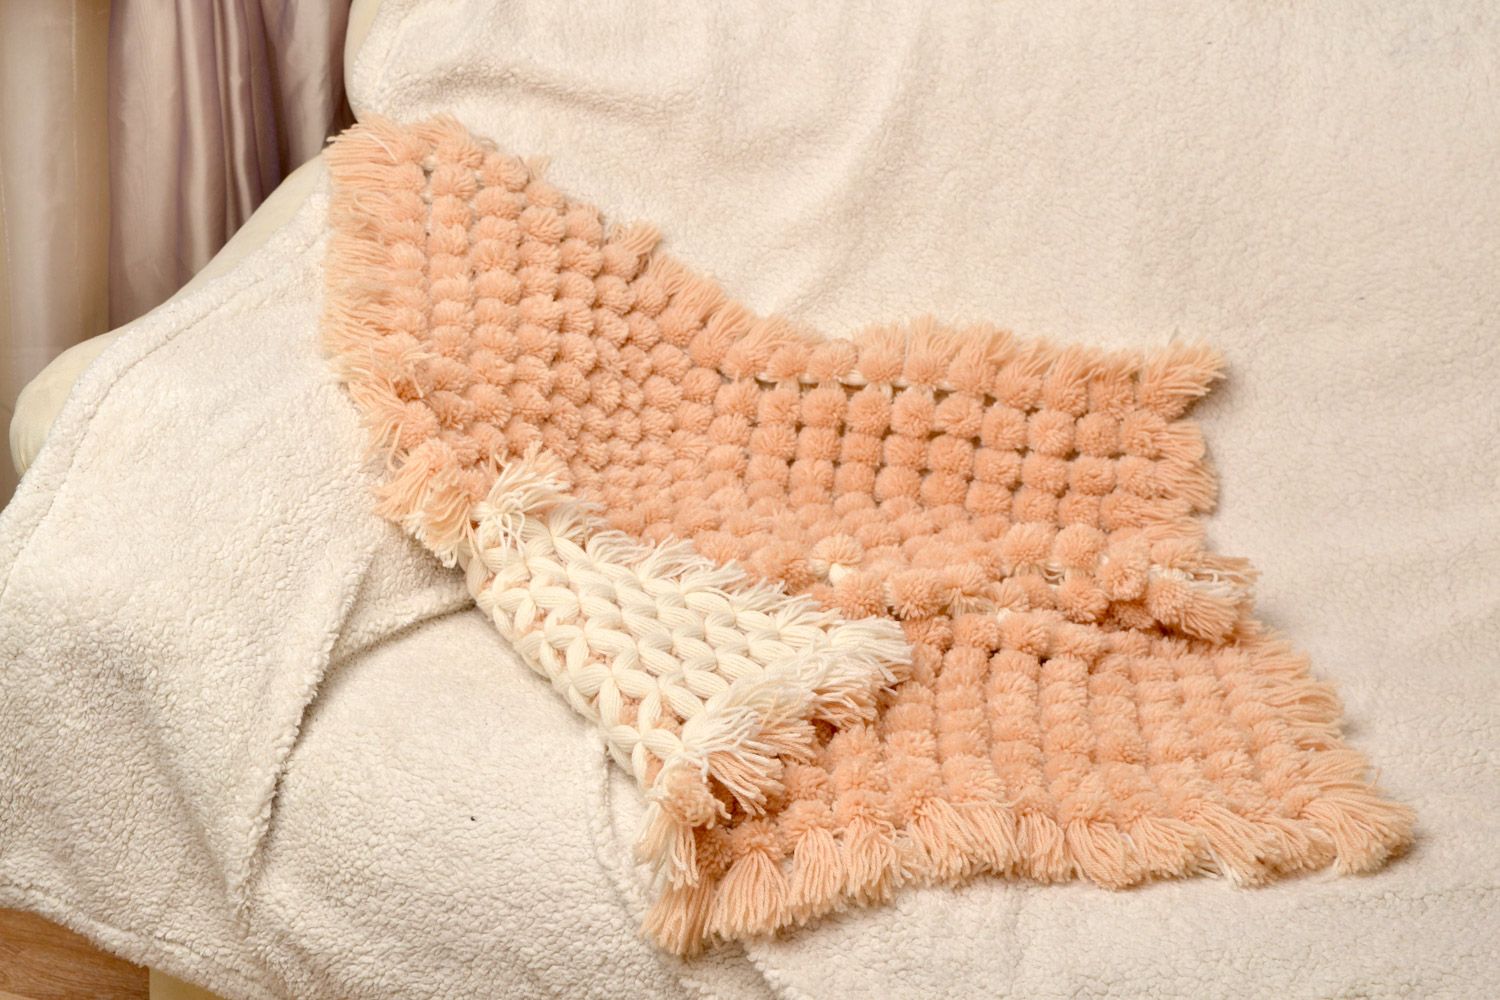 Детское одеяло плетеное вручную из шерсти и акрила мягкое теплое бежевого цвета  фото 1